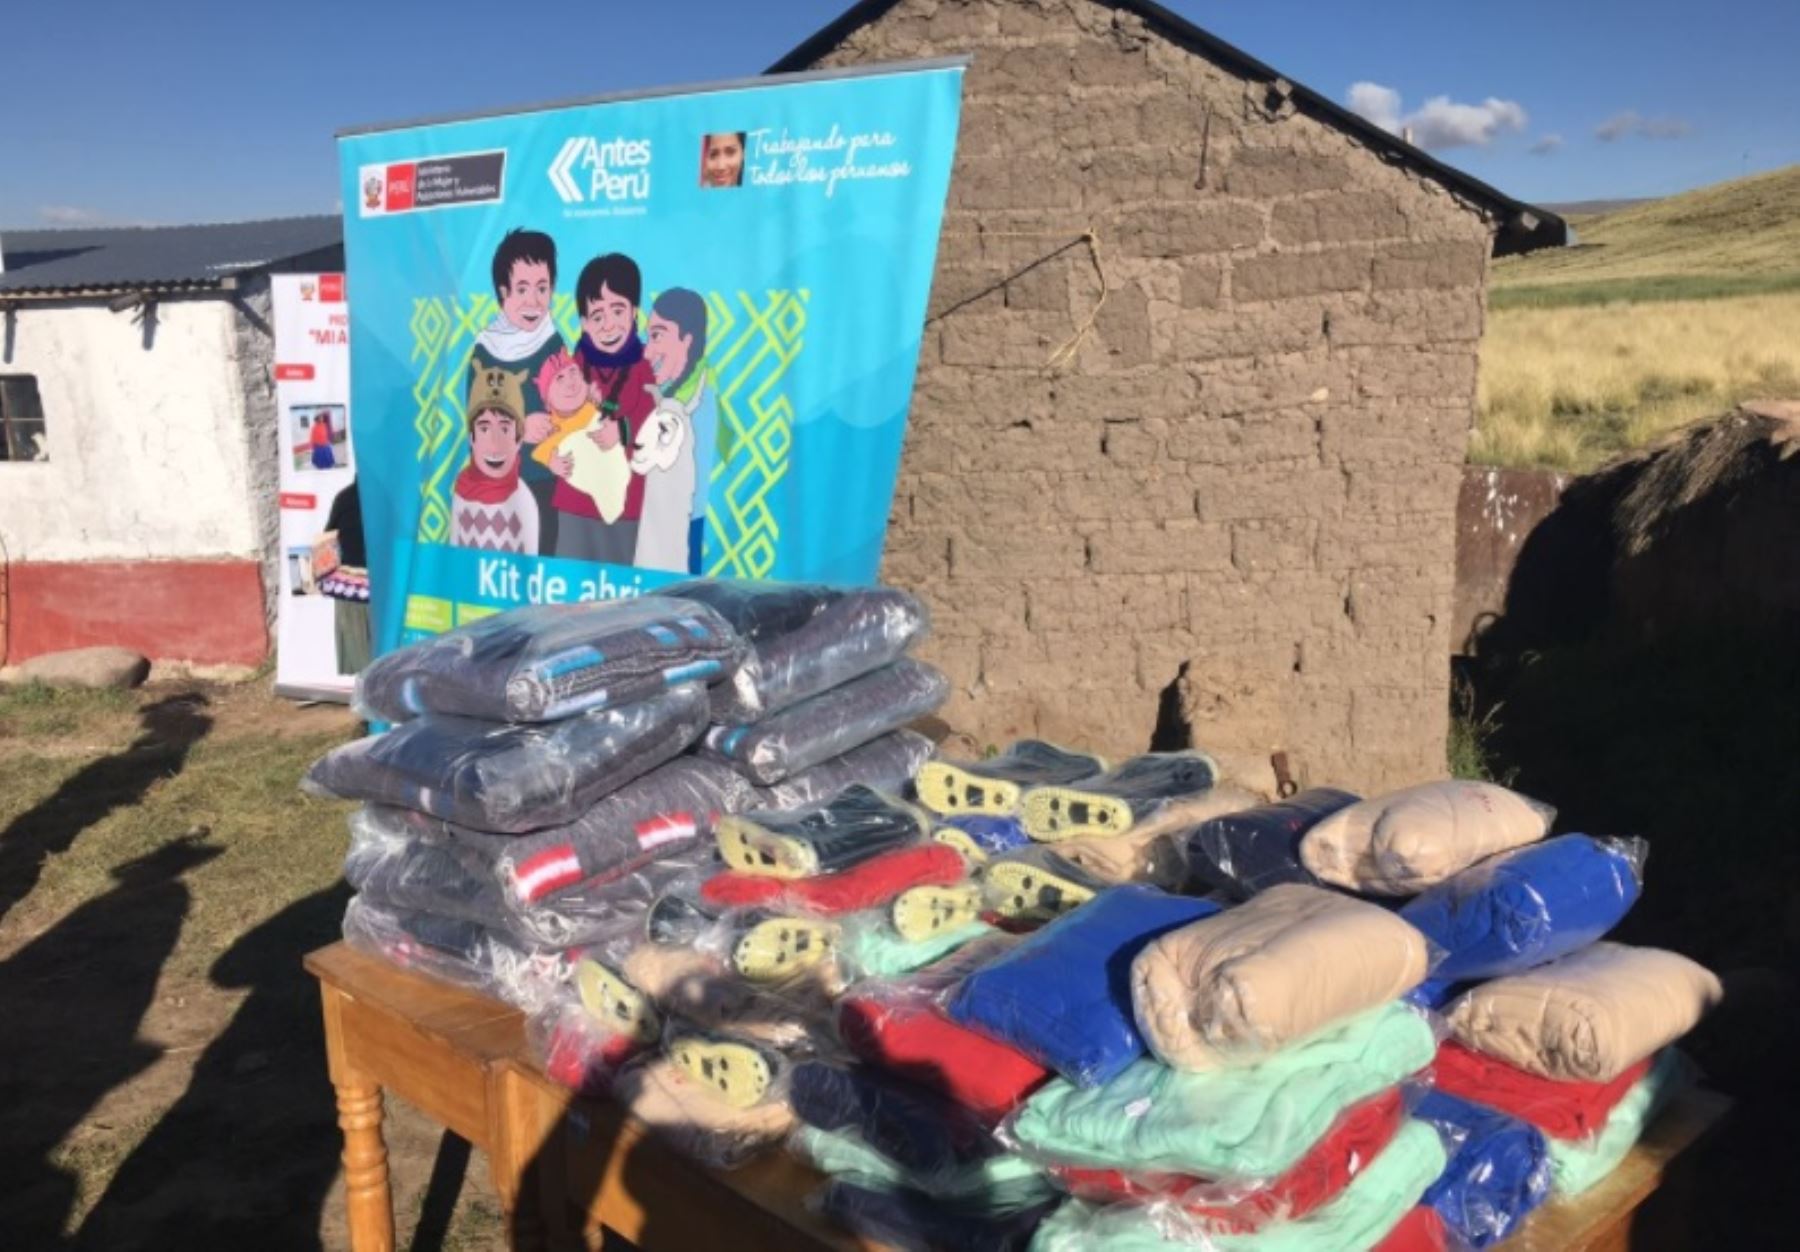 Kits de abrigo entregados por el Ministerio de la Mujer y Poblaciones Vulnerables en el marco del programa Antes Perú, para prevenir los efectos de las heladas y el friaje. Foto: ANDINA/Difusión.